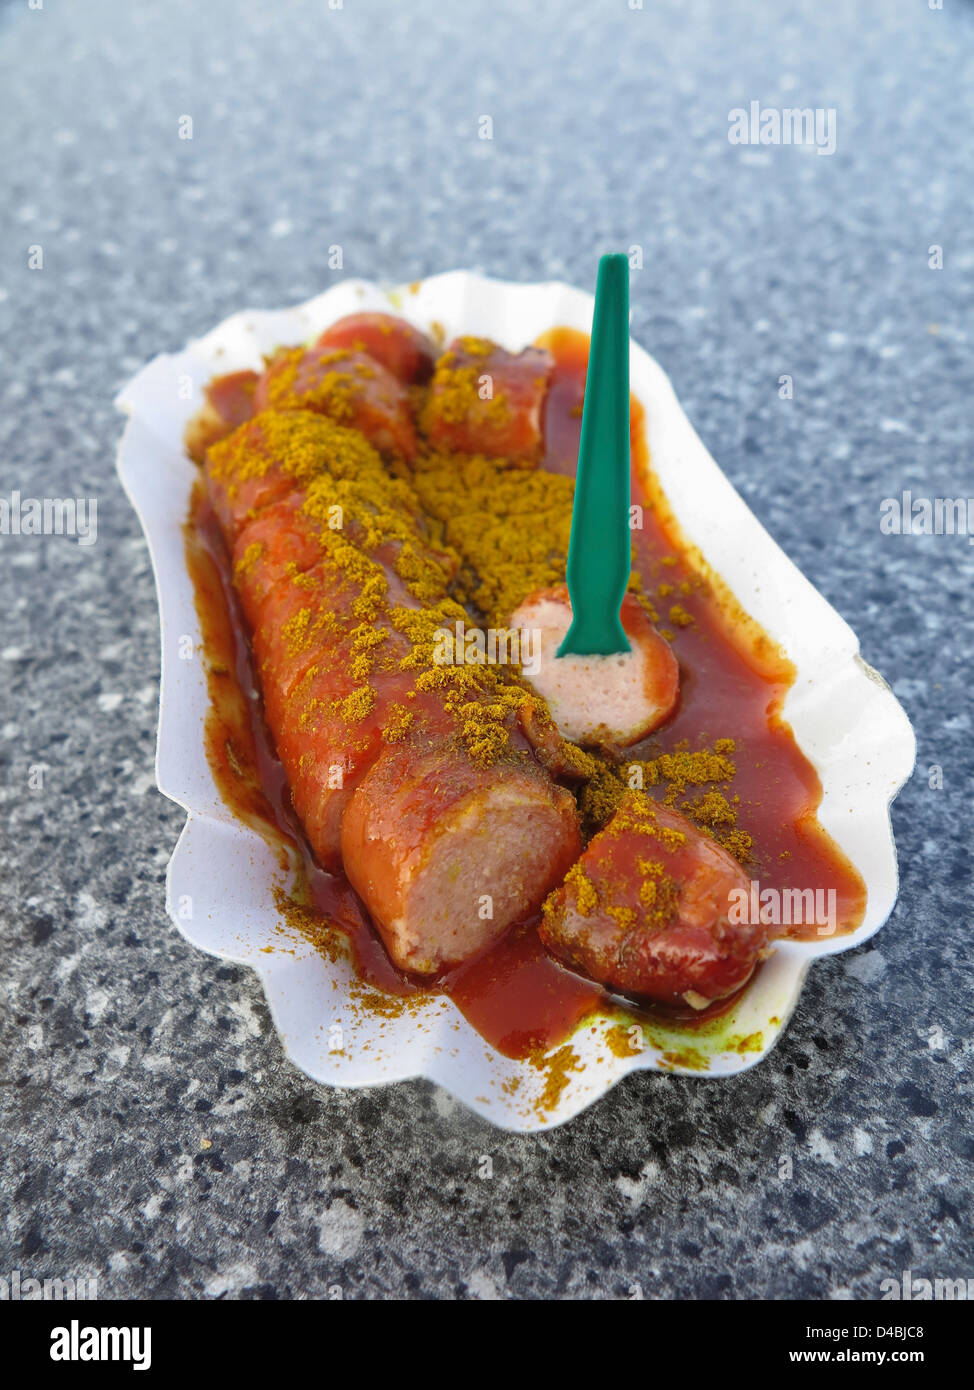 - Currywurst alemana Bratwurst butifarra plato con ketchup y curry Foto de stock